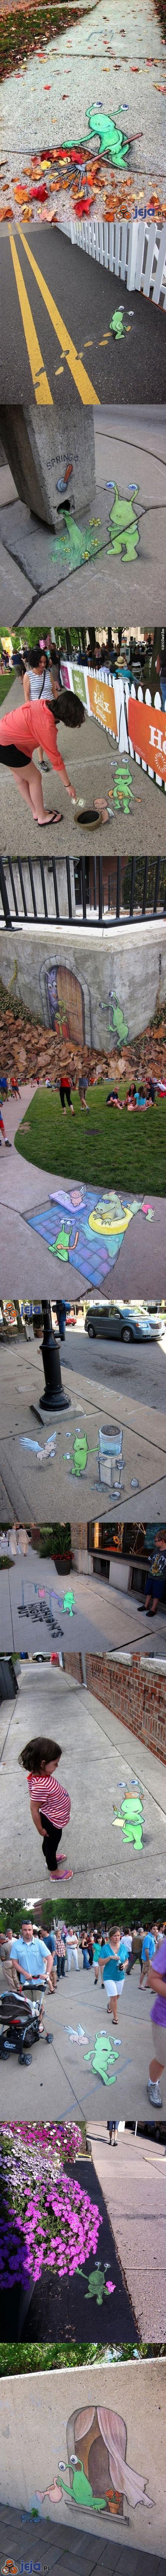 Street art ze ślimaczkiem